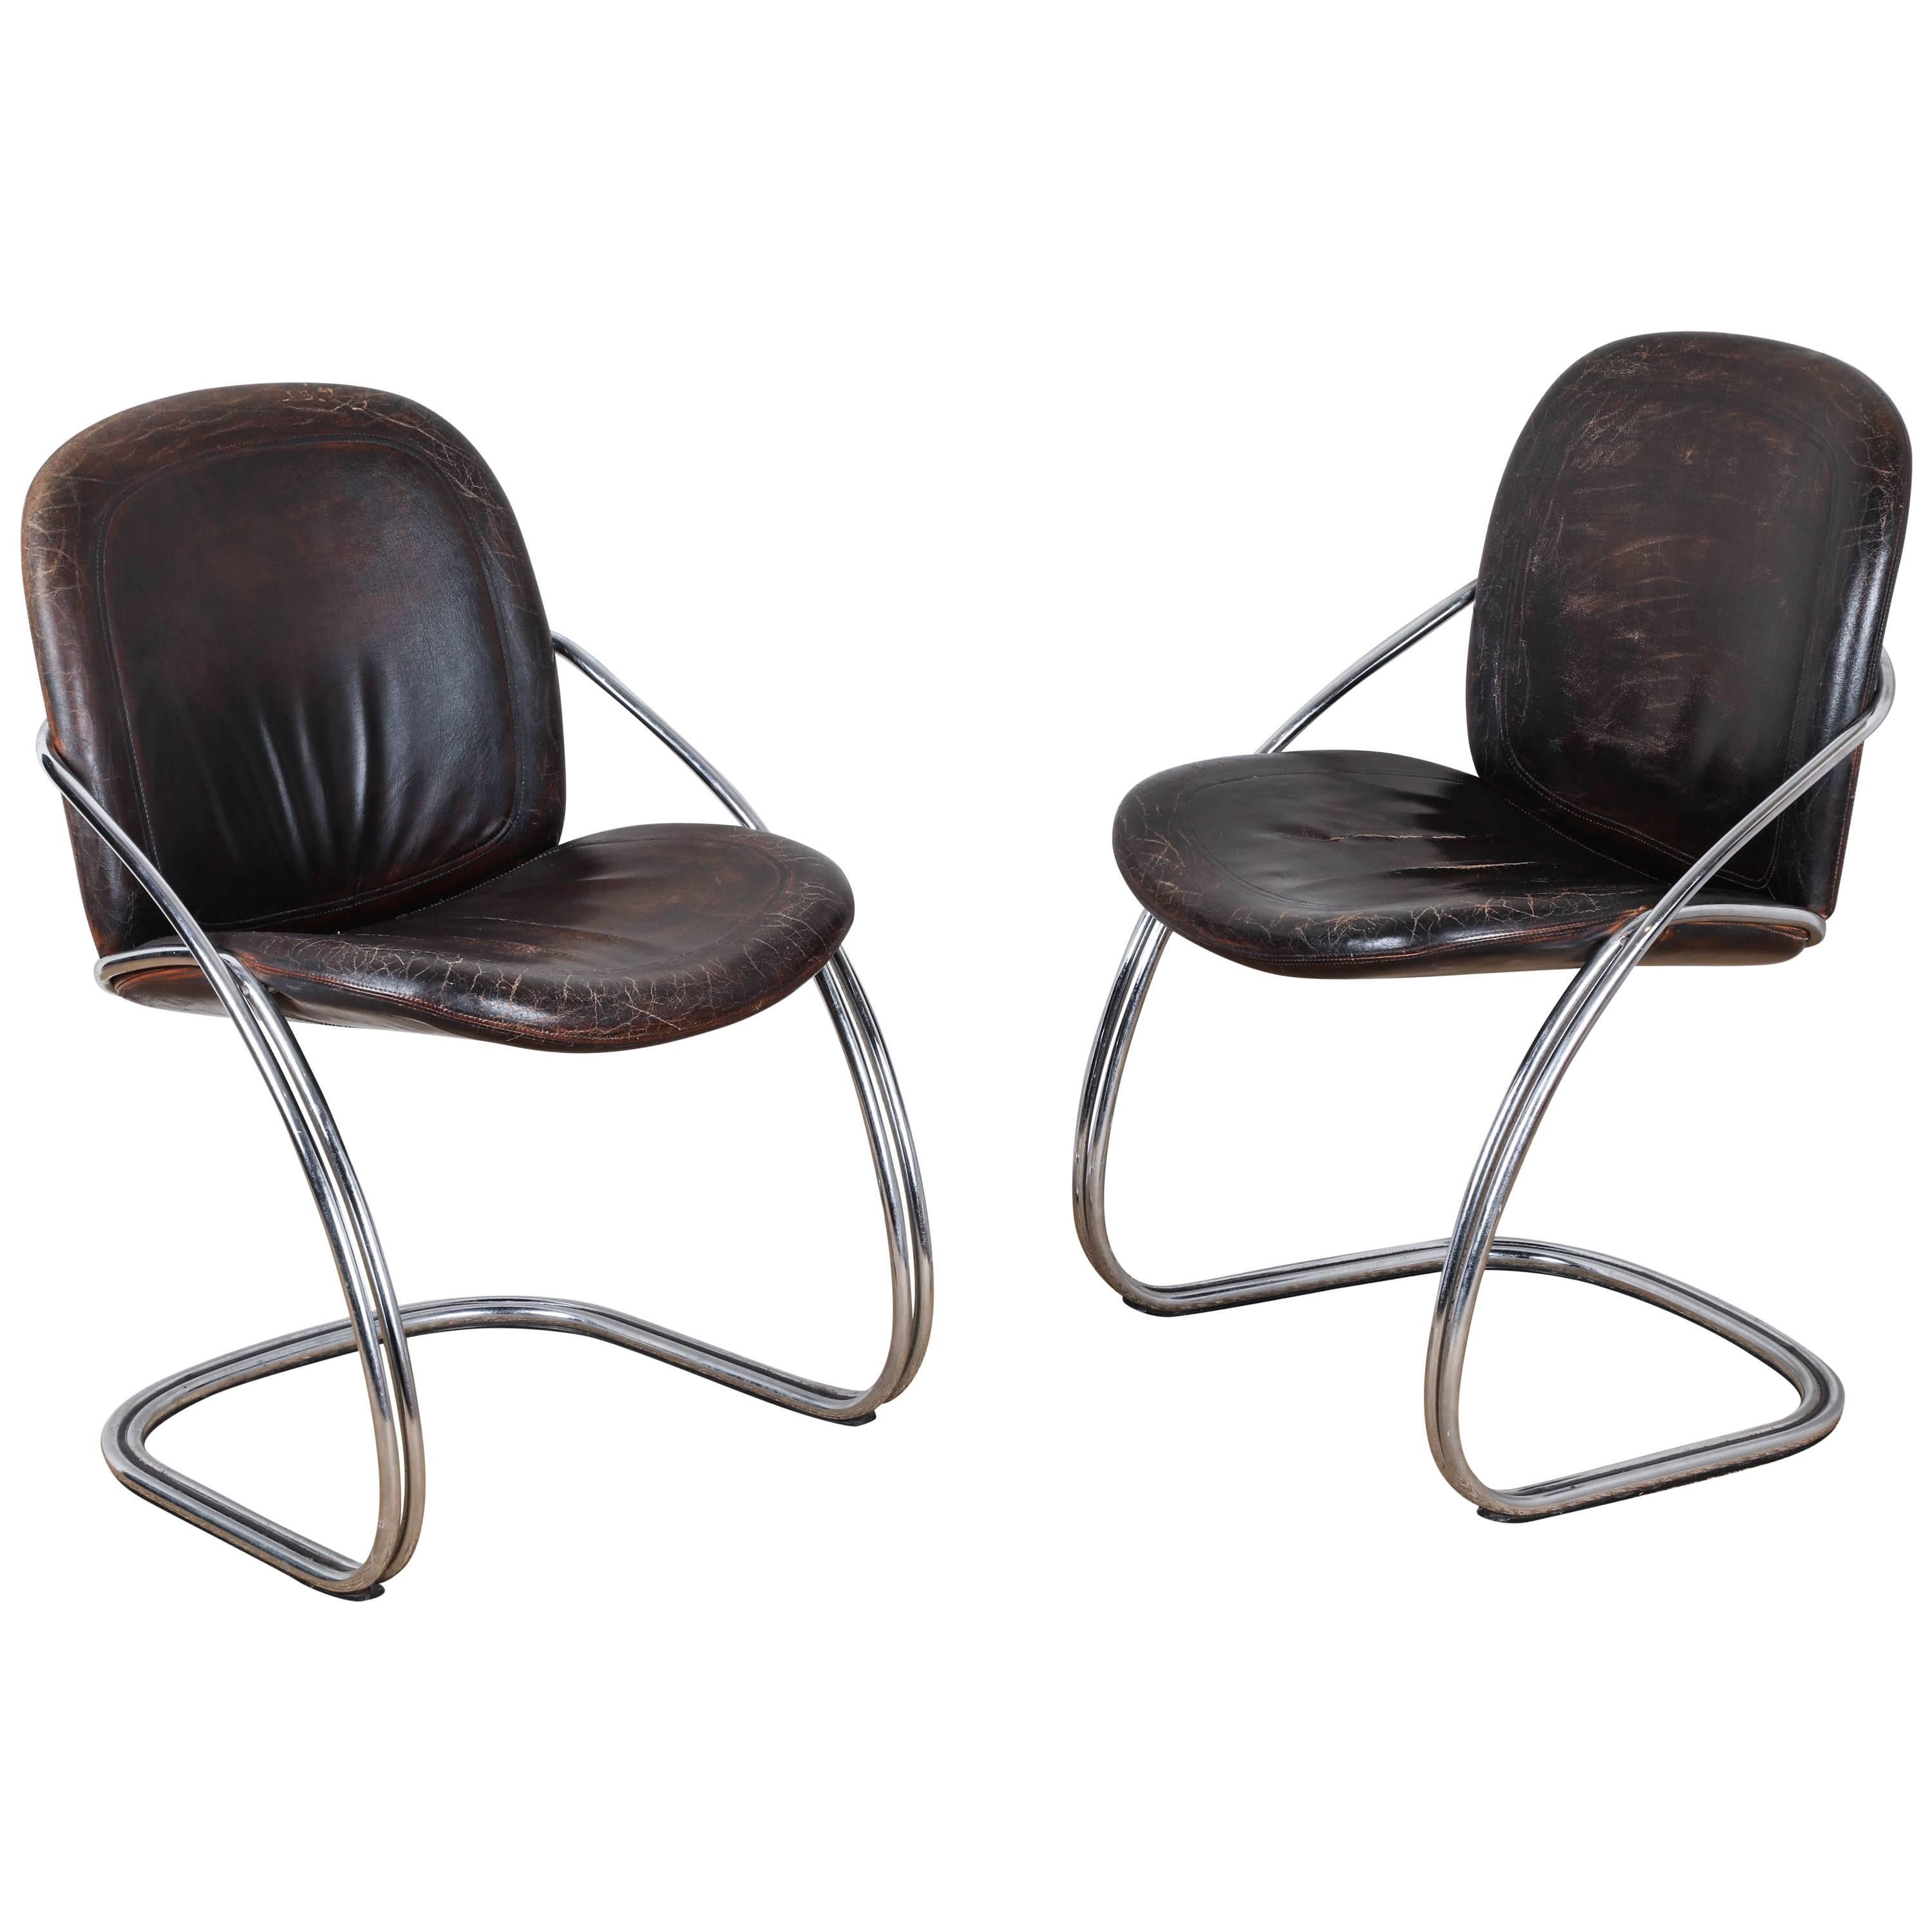 Midcentury Tubular Chrome Chair   For Sale